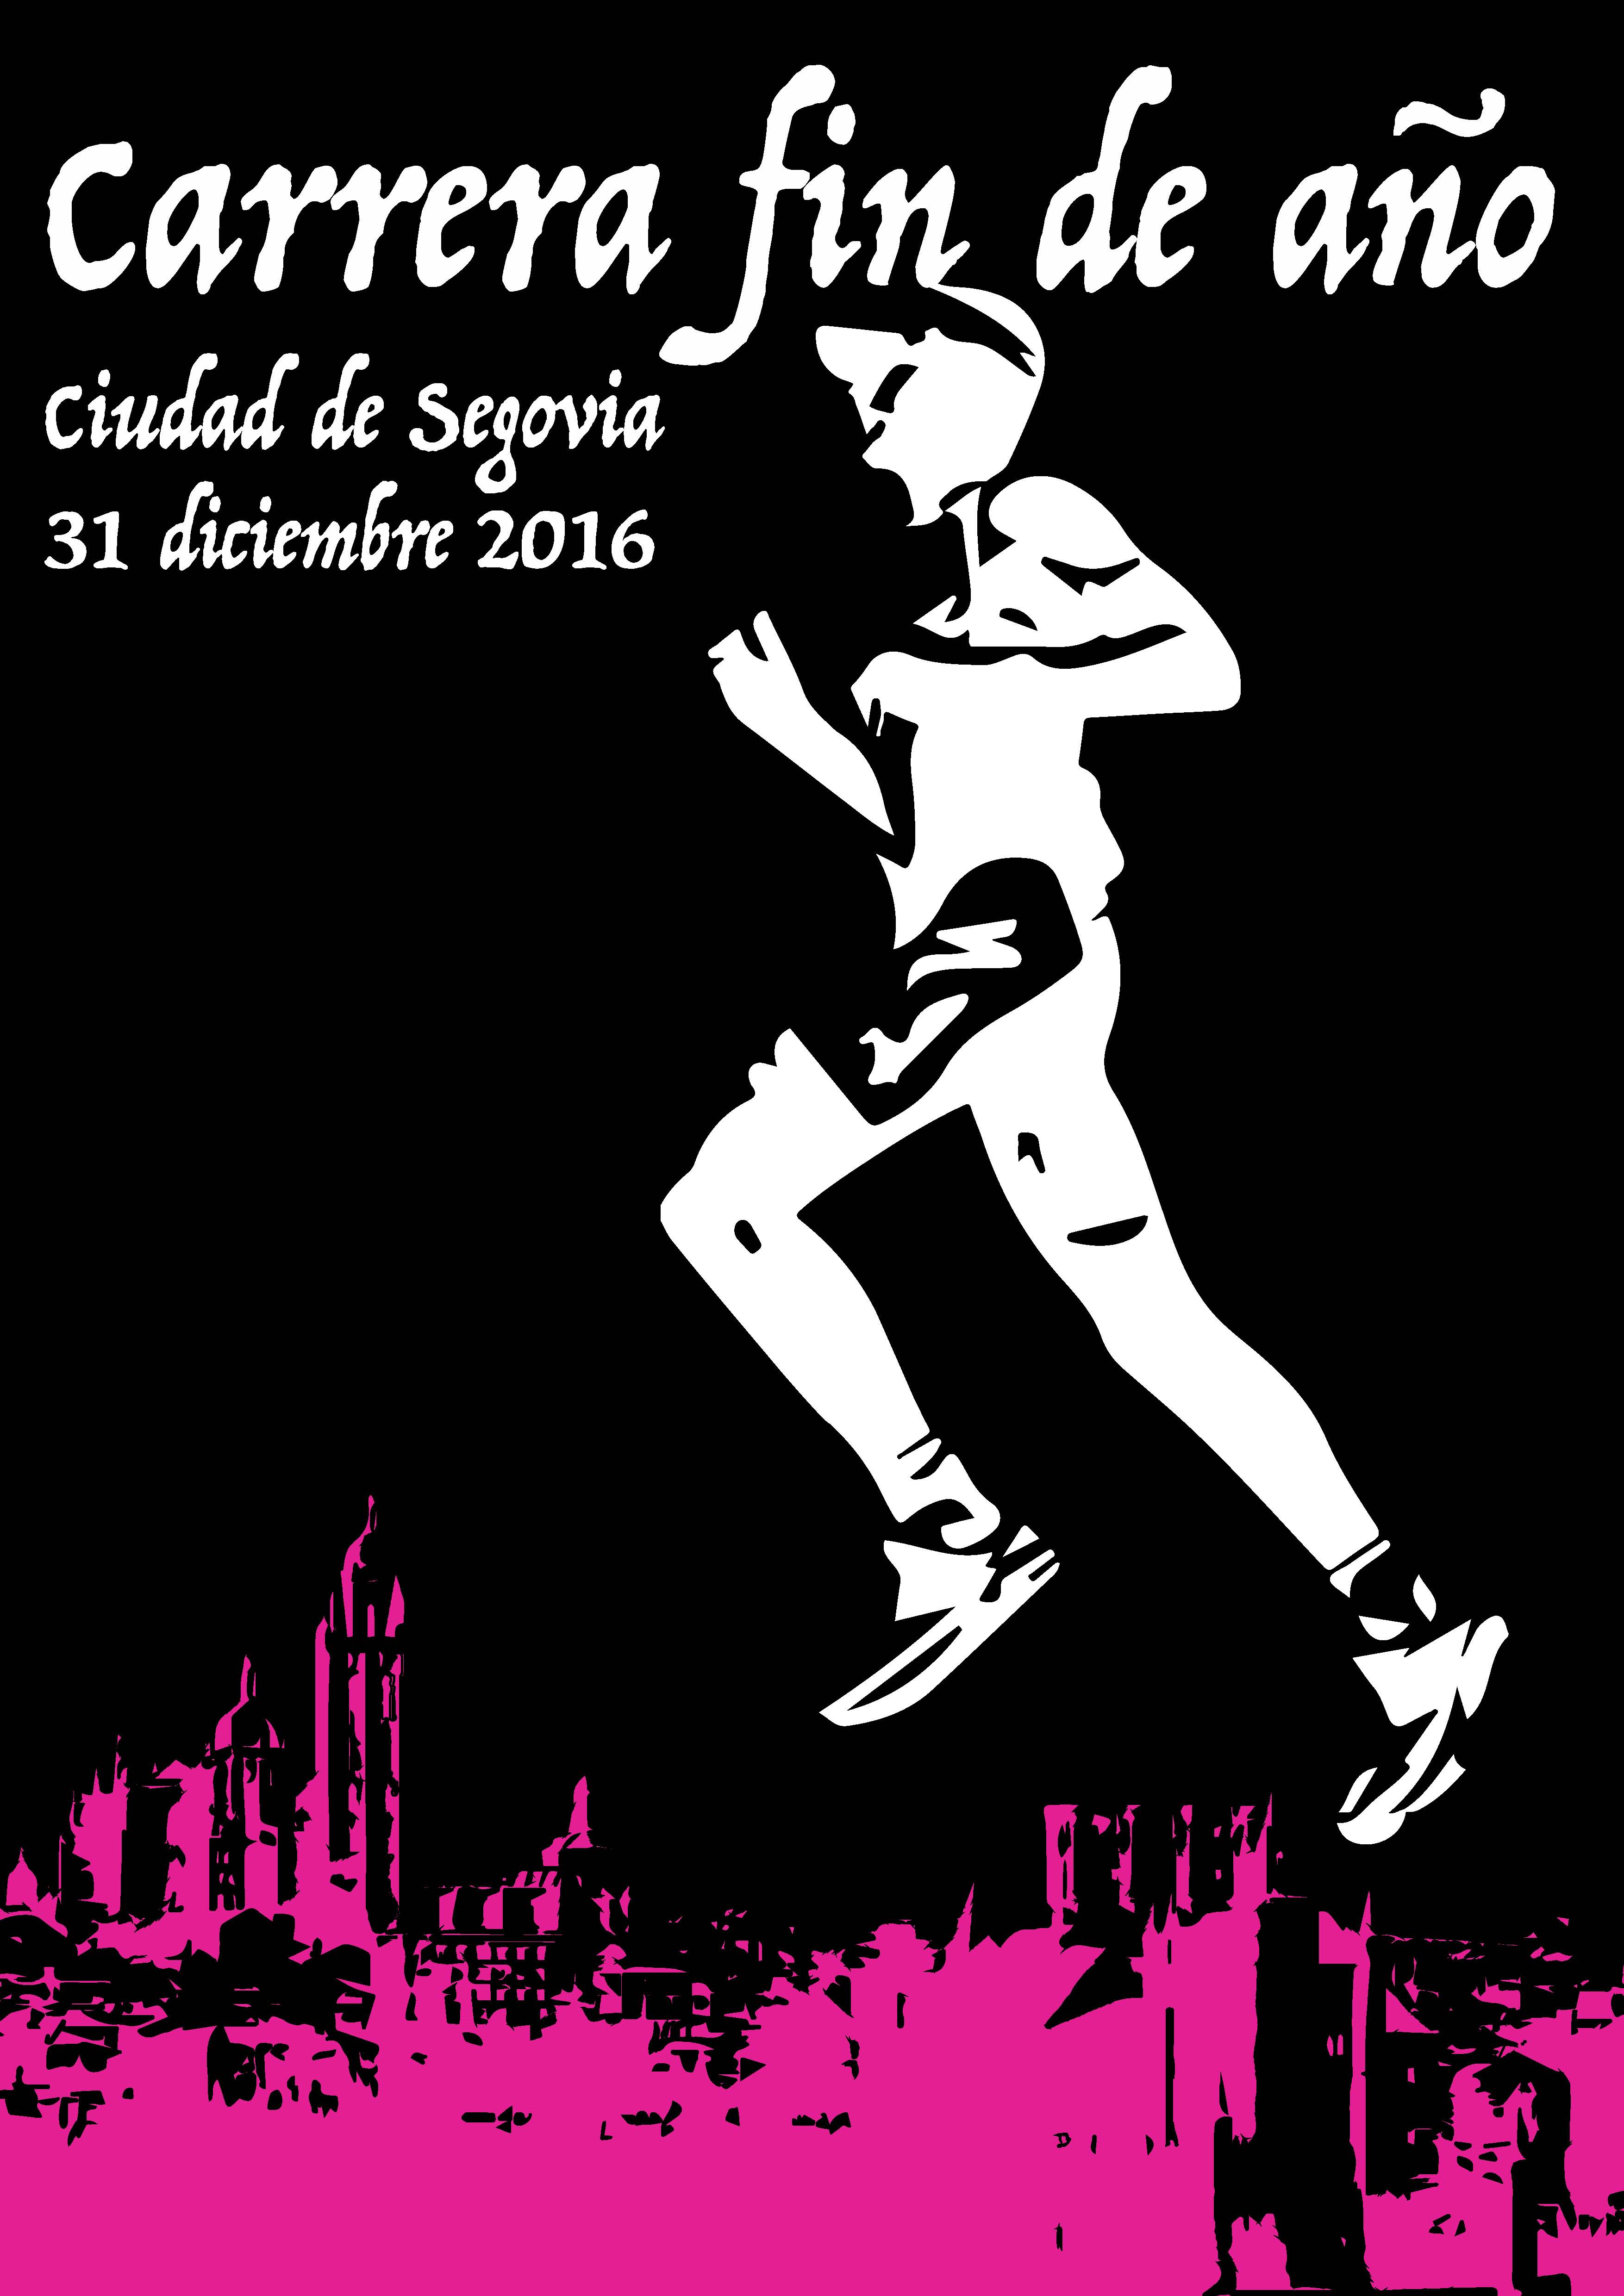 Isabel Rodrigo Martín gana el concurso del cartel anunciador de la Carrera Fin de año “Ciudad de Segovia”